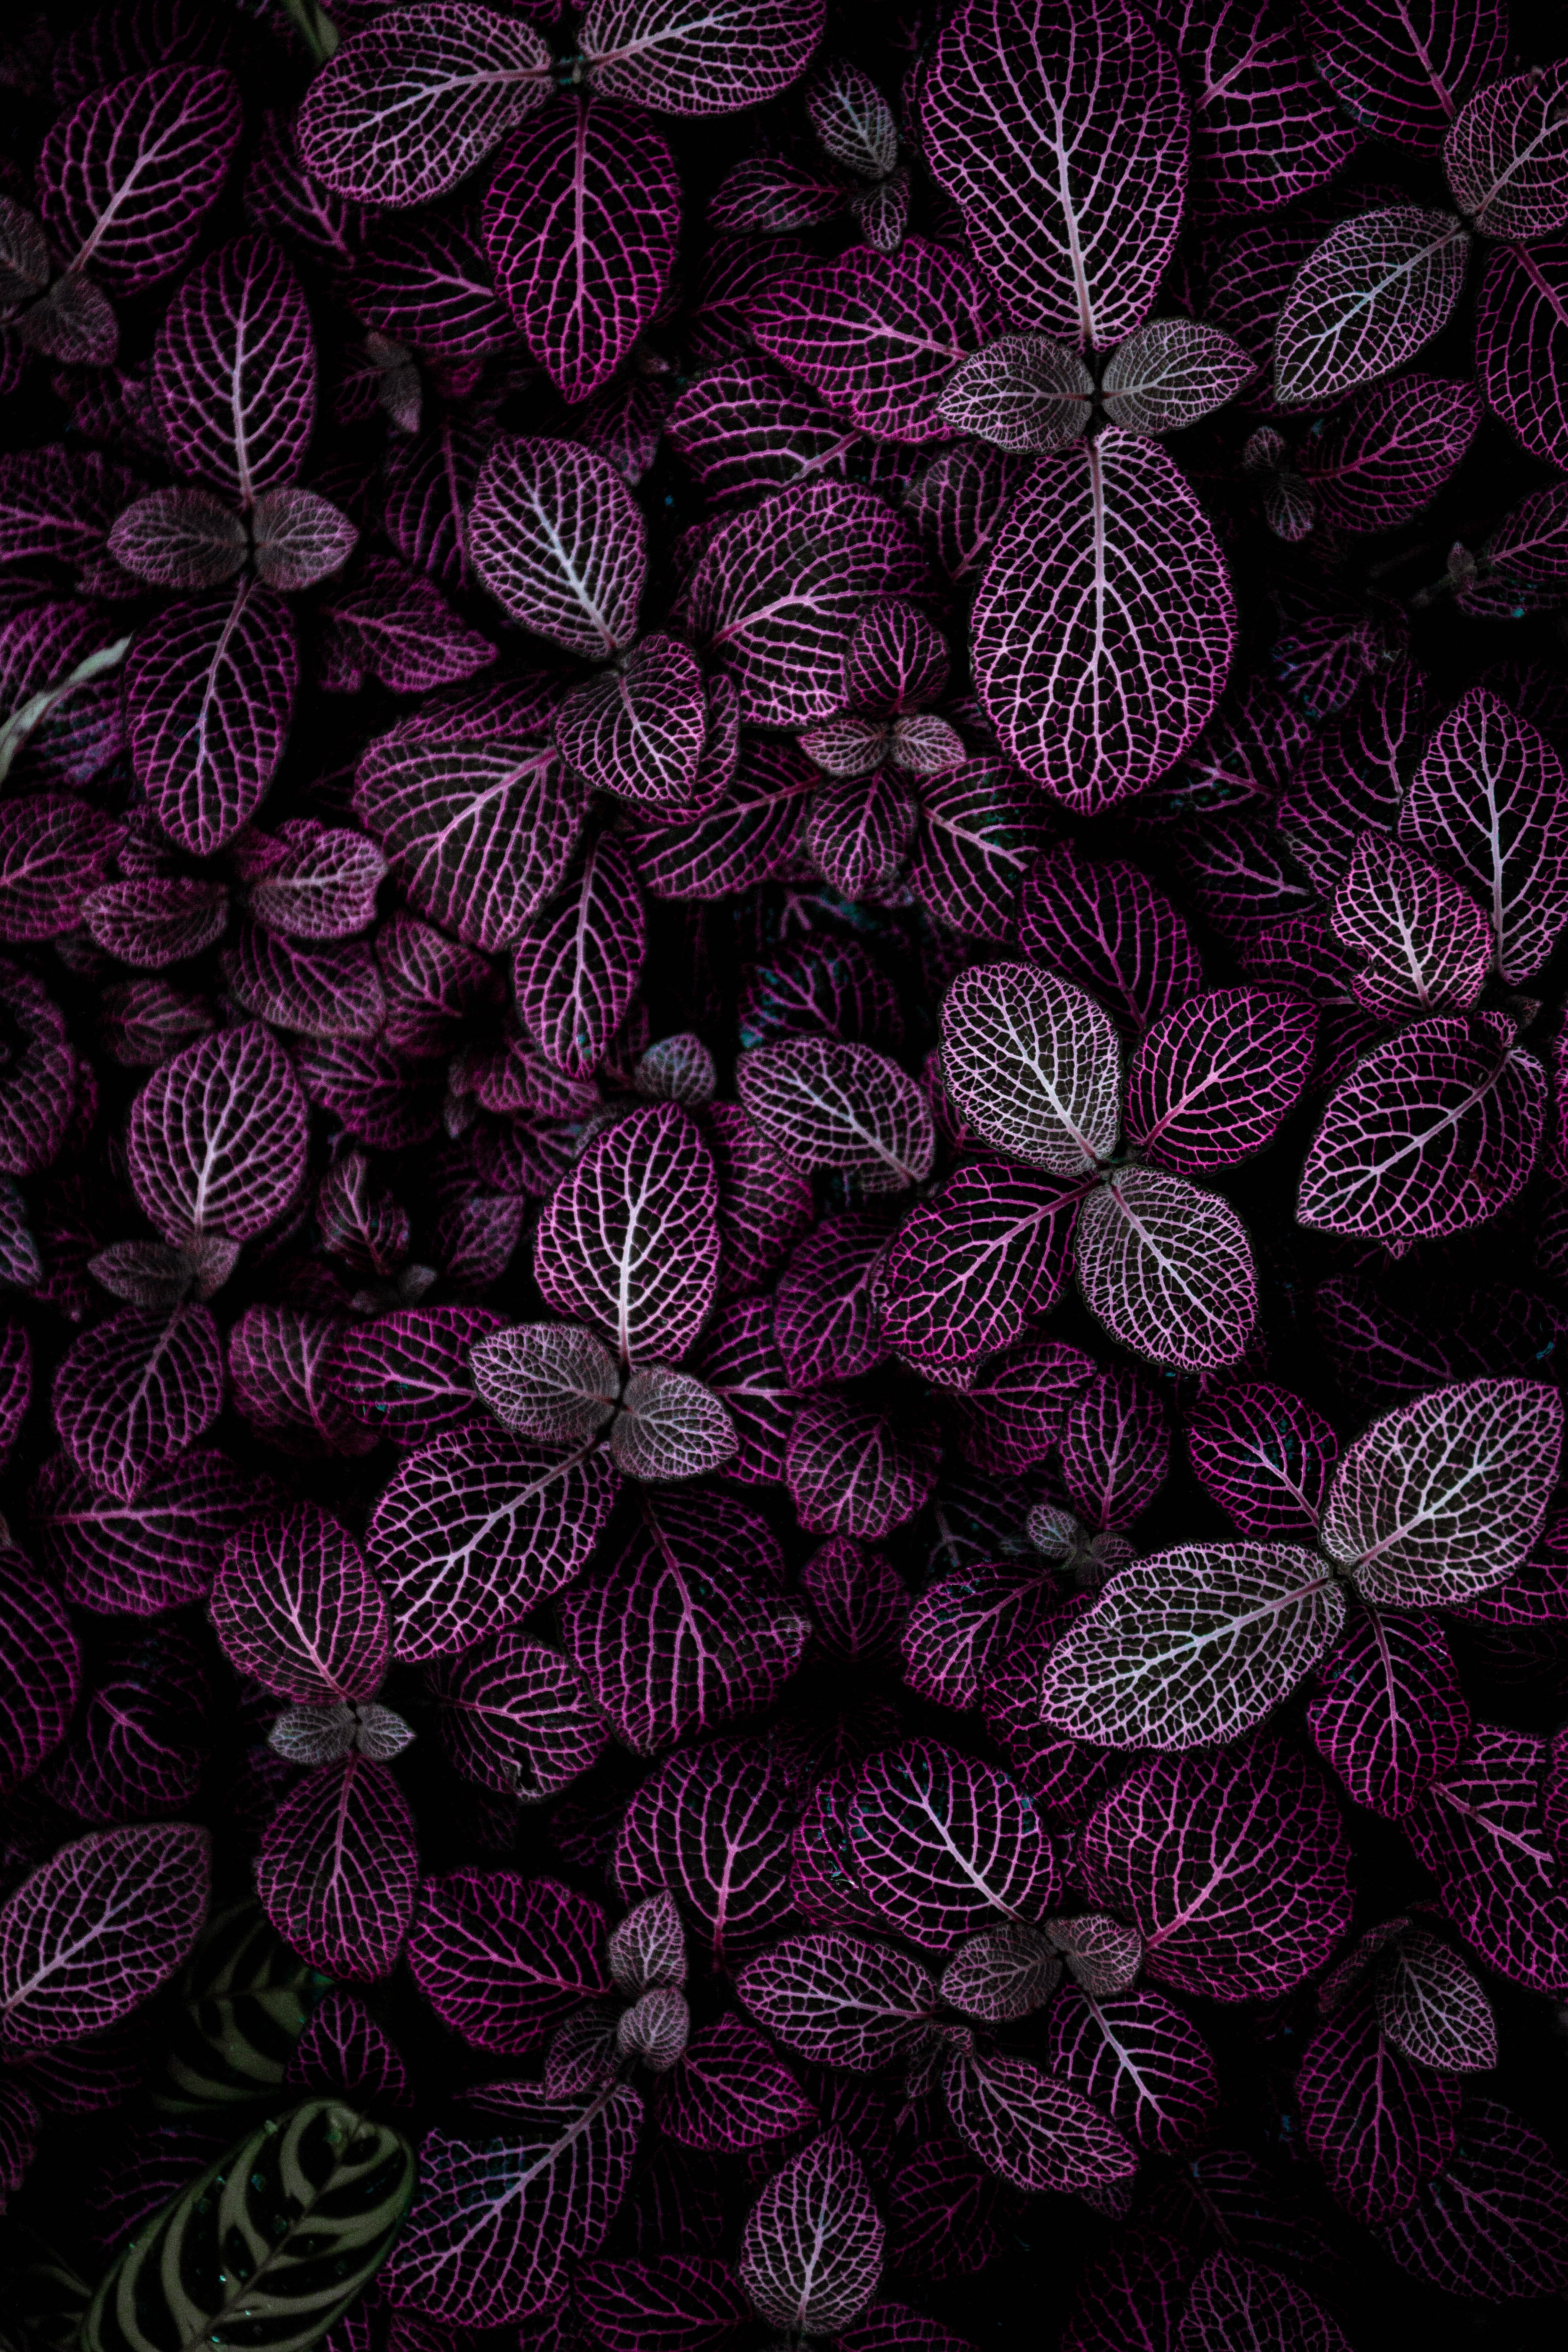 Hình nền lá màu tím 4K với đủ loại hoa lá, họa tiết và thiên nhiên sẽ khiến cho màn hình của bạn trở nên sống động hơn bao giờ hết. Bạn sẽ yêu thích những chi tiết tinh tế và sống động trong hình ảnh này.